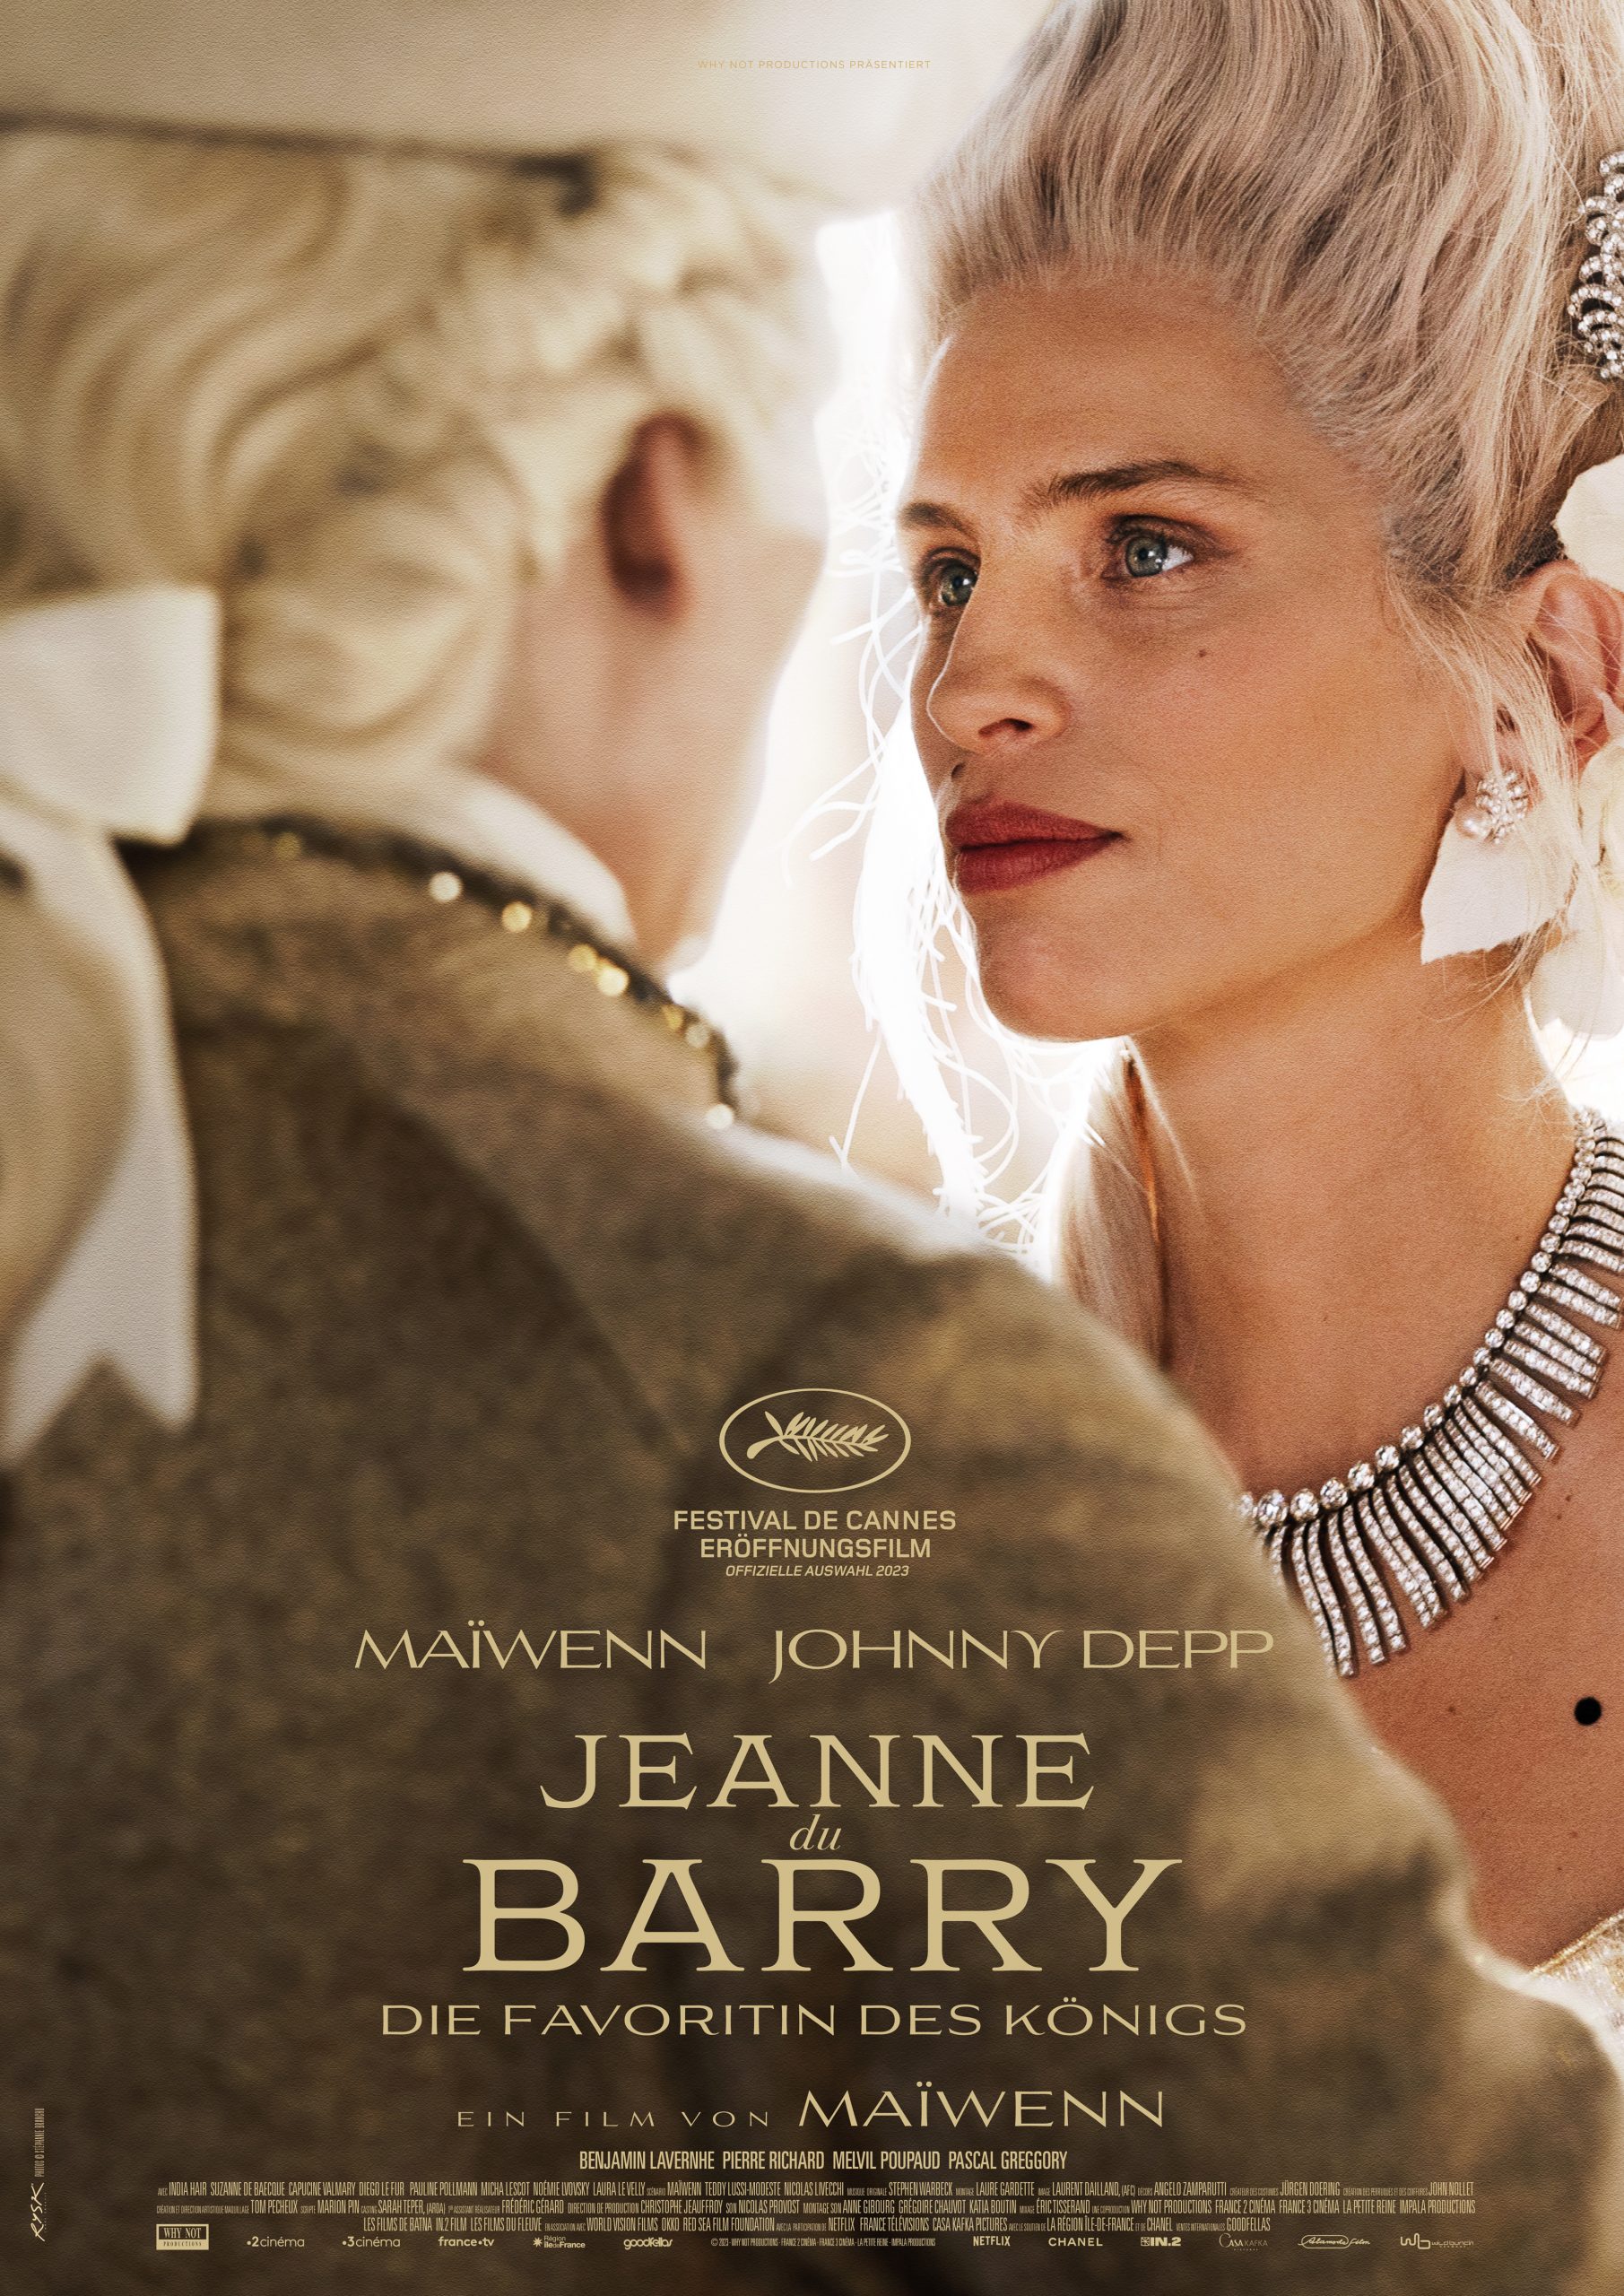 Der Eröffnungsfilm von Cannes, JEANNE DU BARRY, ab 24. August im Kino